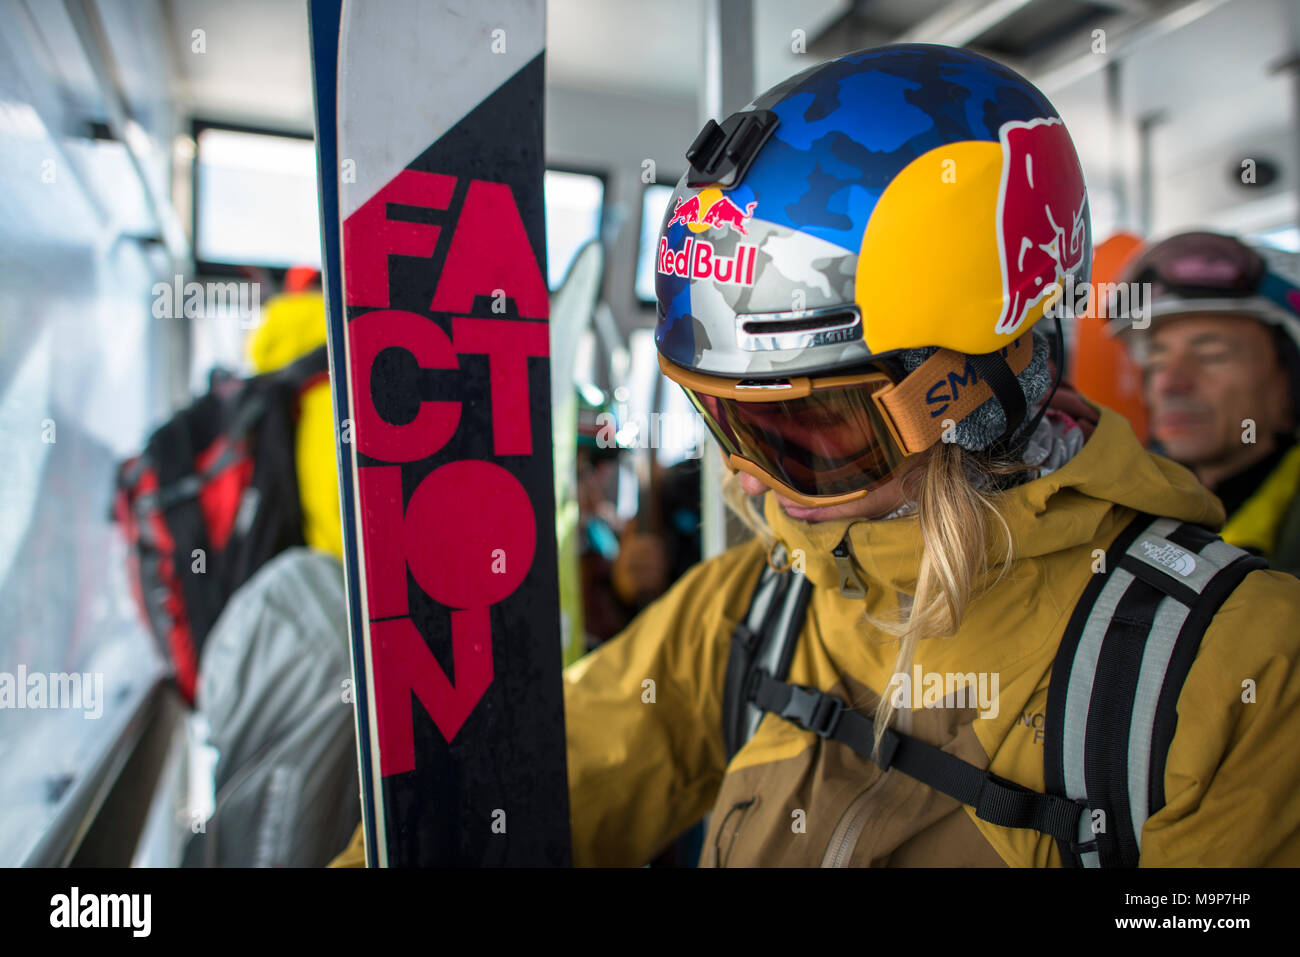 Professionelle Skifahrer tragen Skibekleidung, Monterosa Ski Mountain Resort in Gressoney, Aosta, Italien Stockfoto